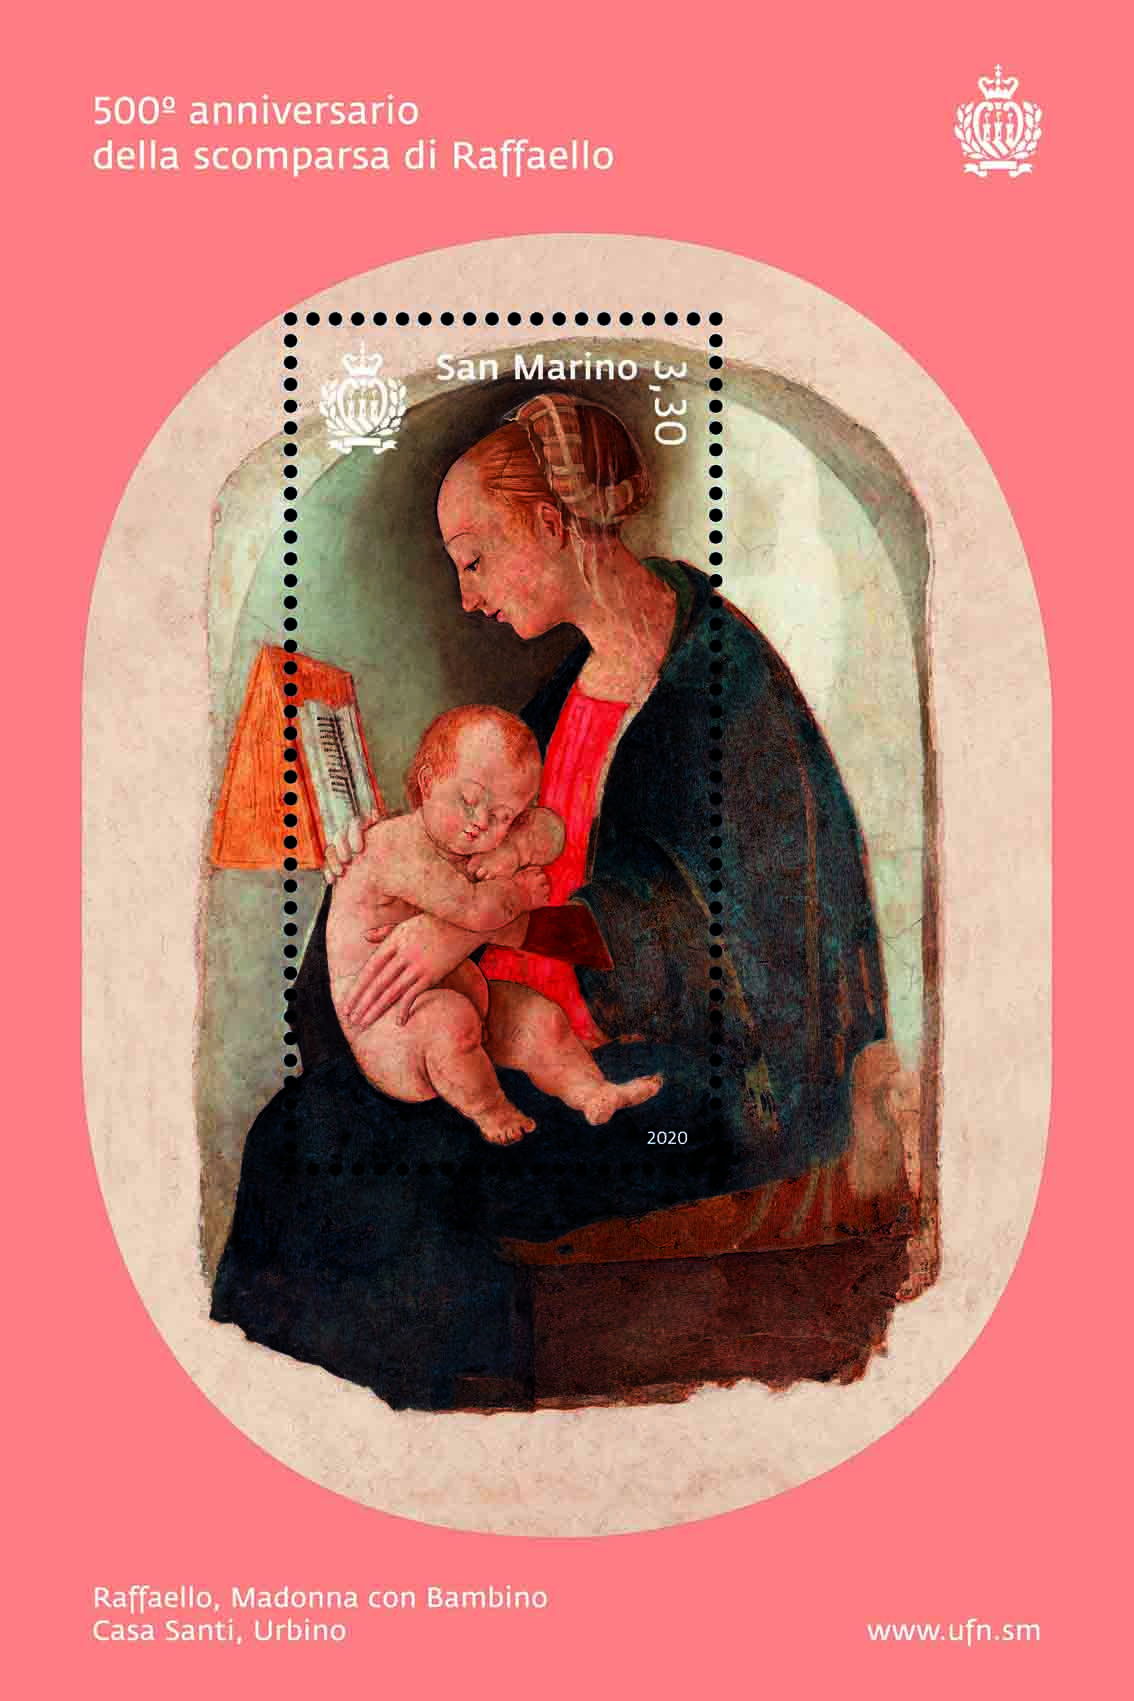 Il francobollo sammarinese in formato foglietto in distribuzione dal 24 marzo: raffigura la Vergine Maria che tiene Gesù Bambino addormentato sulle ginocchia ed è pervasa dalla delicatezza dell’intimità tra madre e figlio, tema ricorrente nella sua produzione artistica.